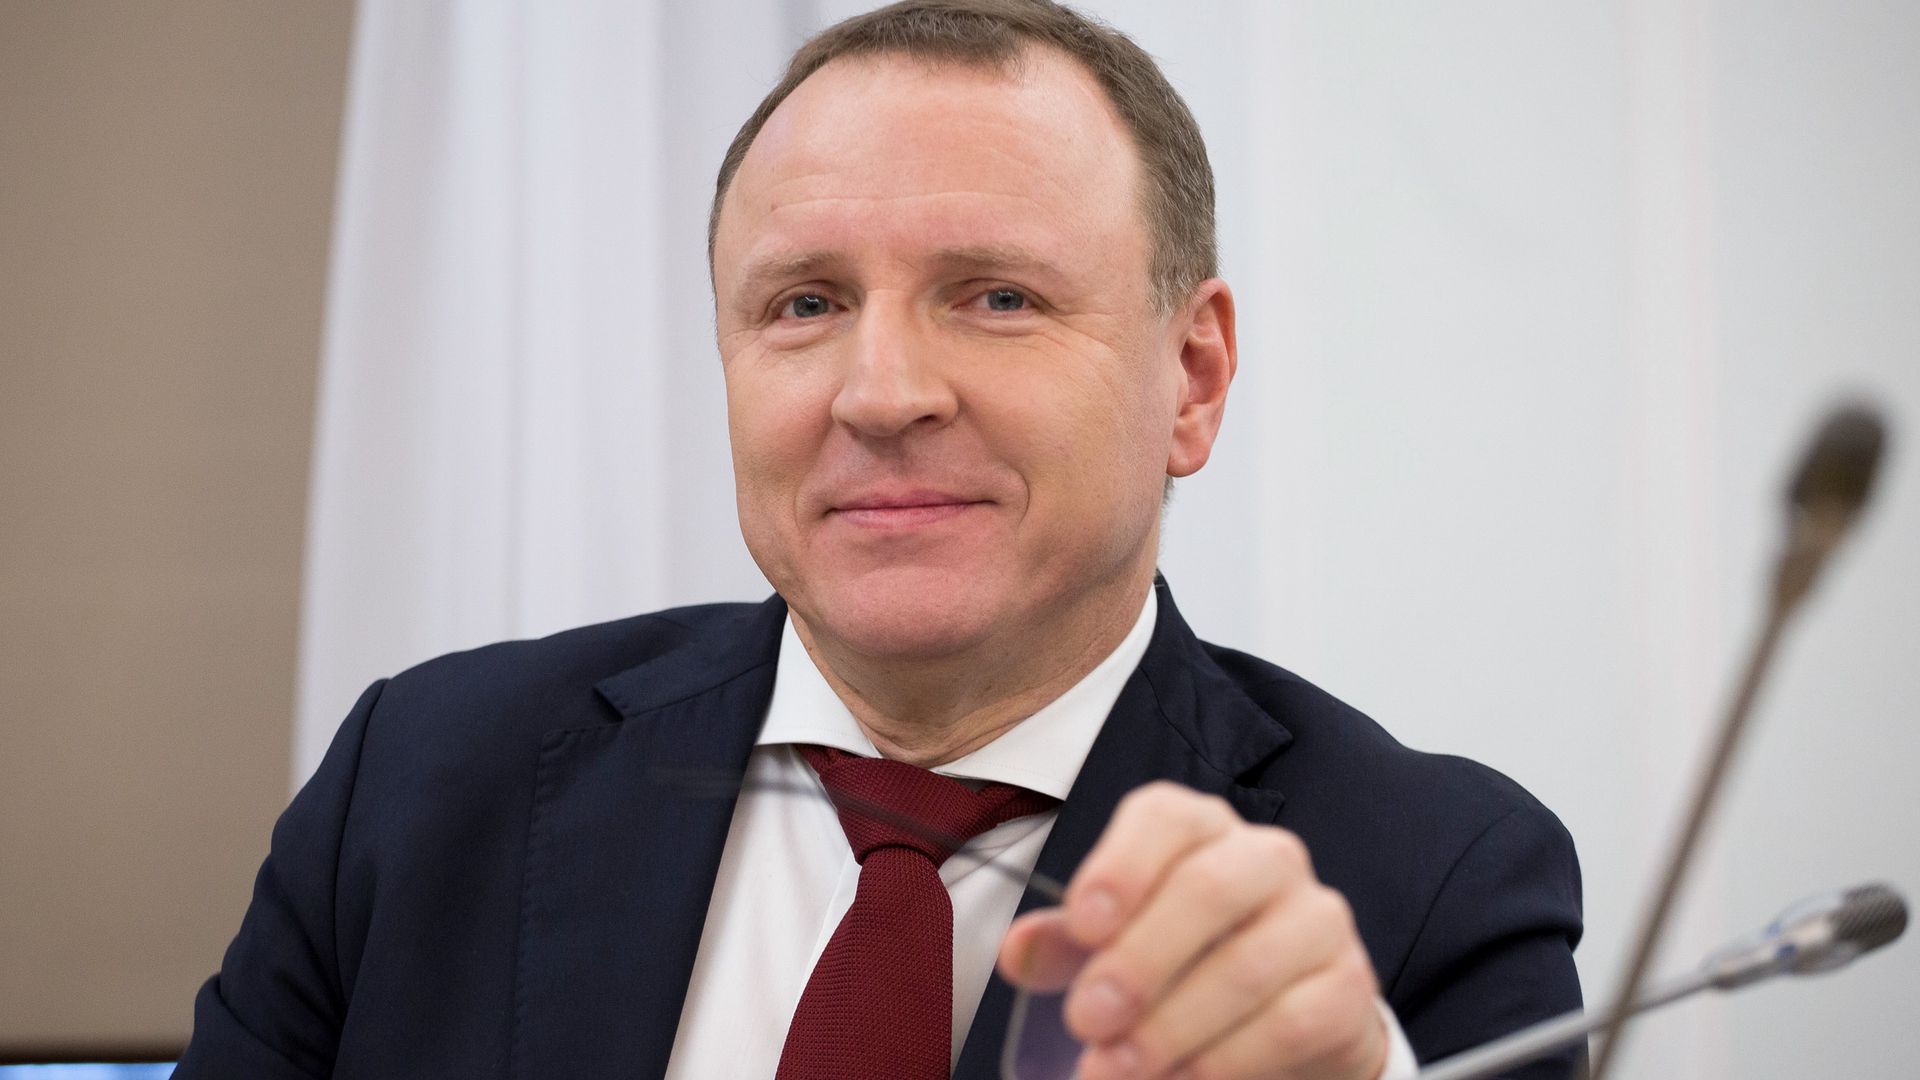 Jacek Kurski po zwolnieniu z funkcji prezesa TVP wciąż pozostał doradcą nowego szefa telewizji